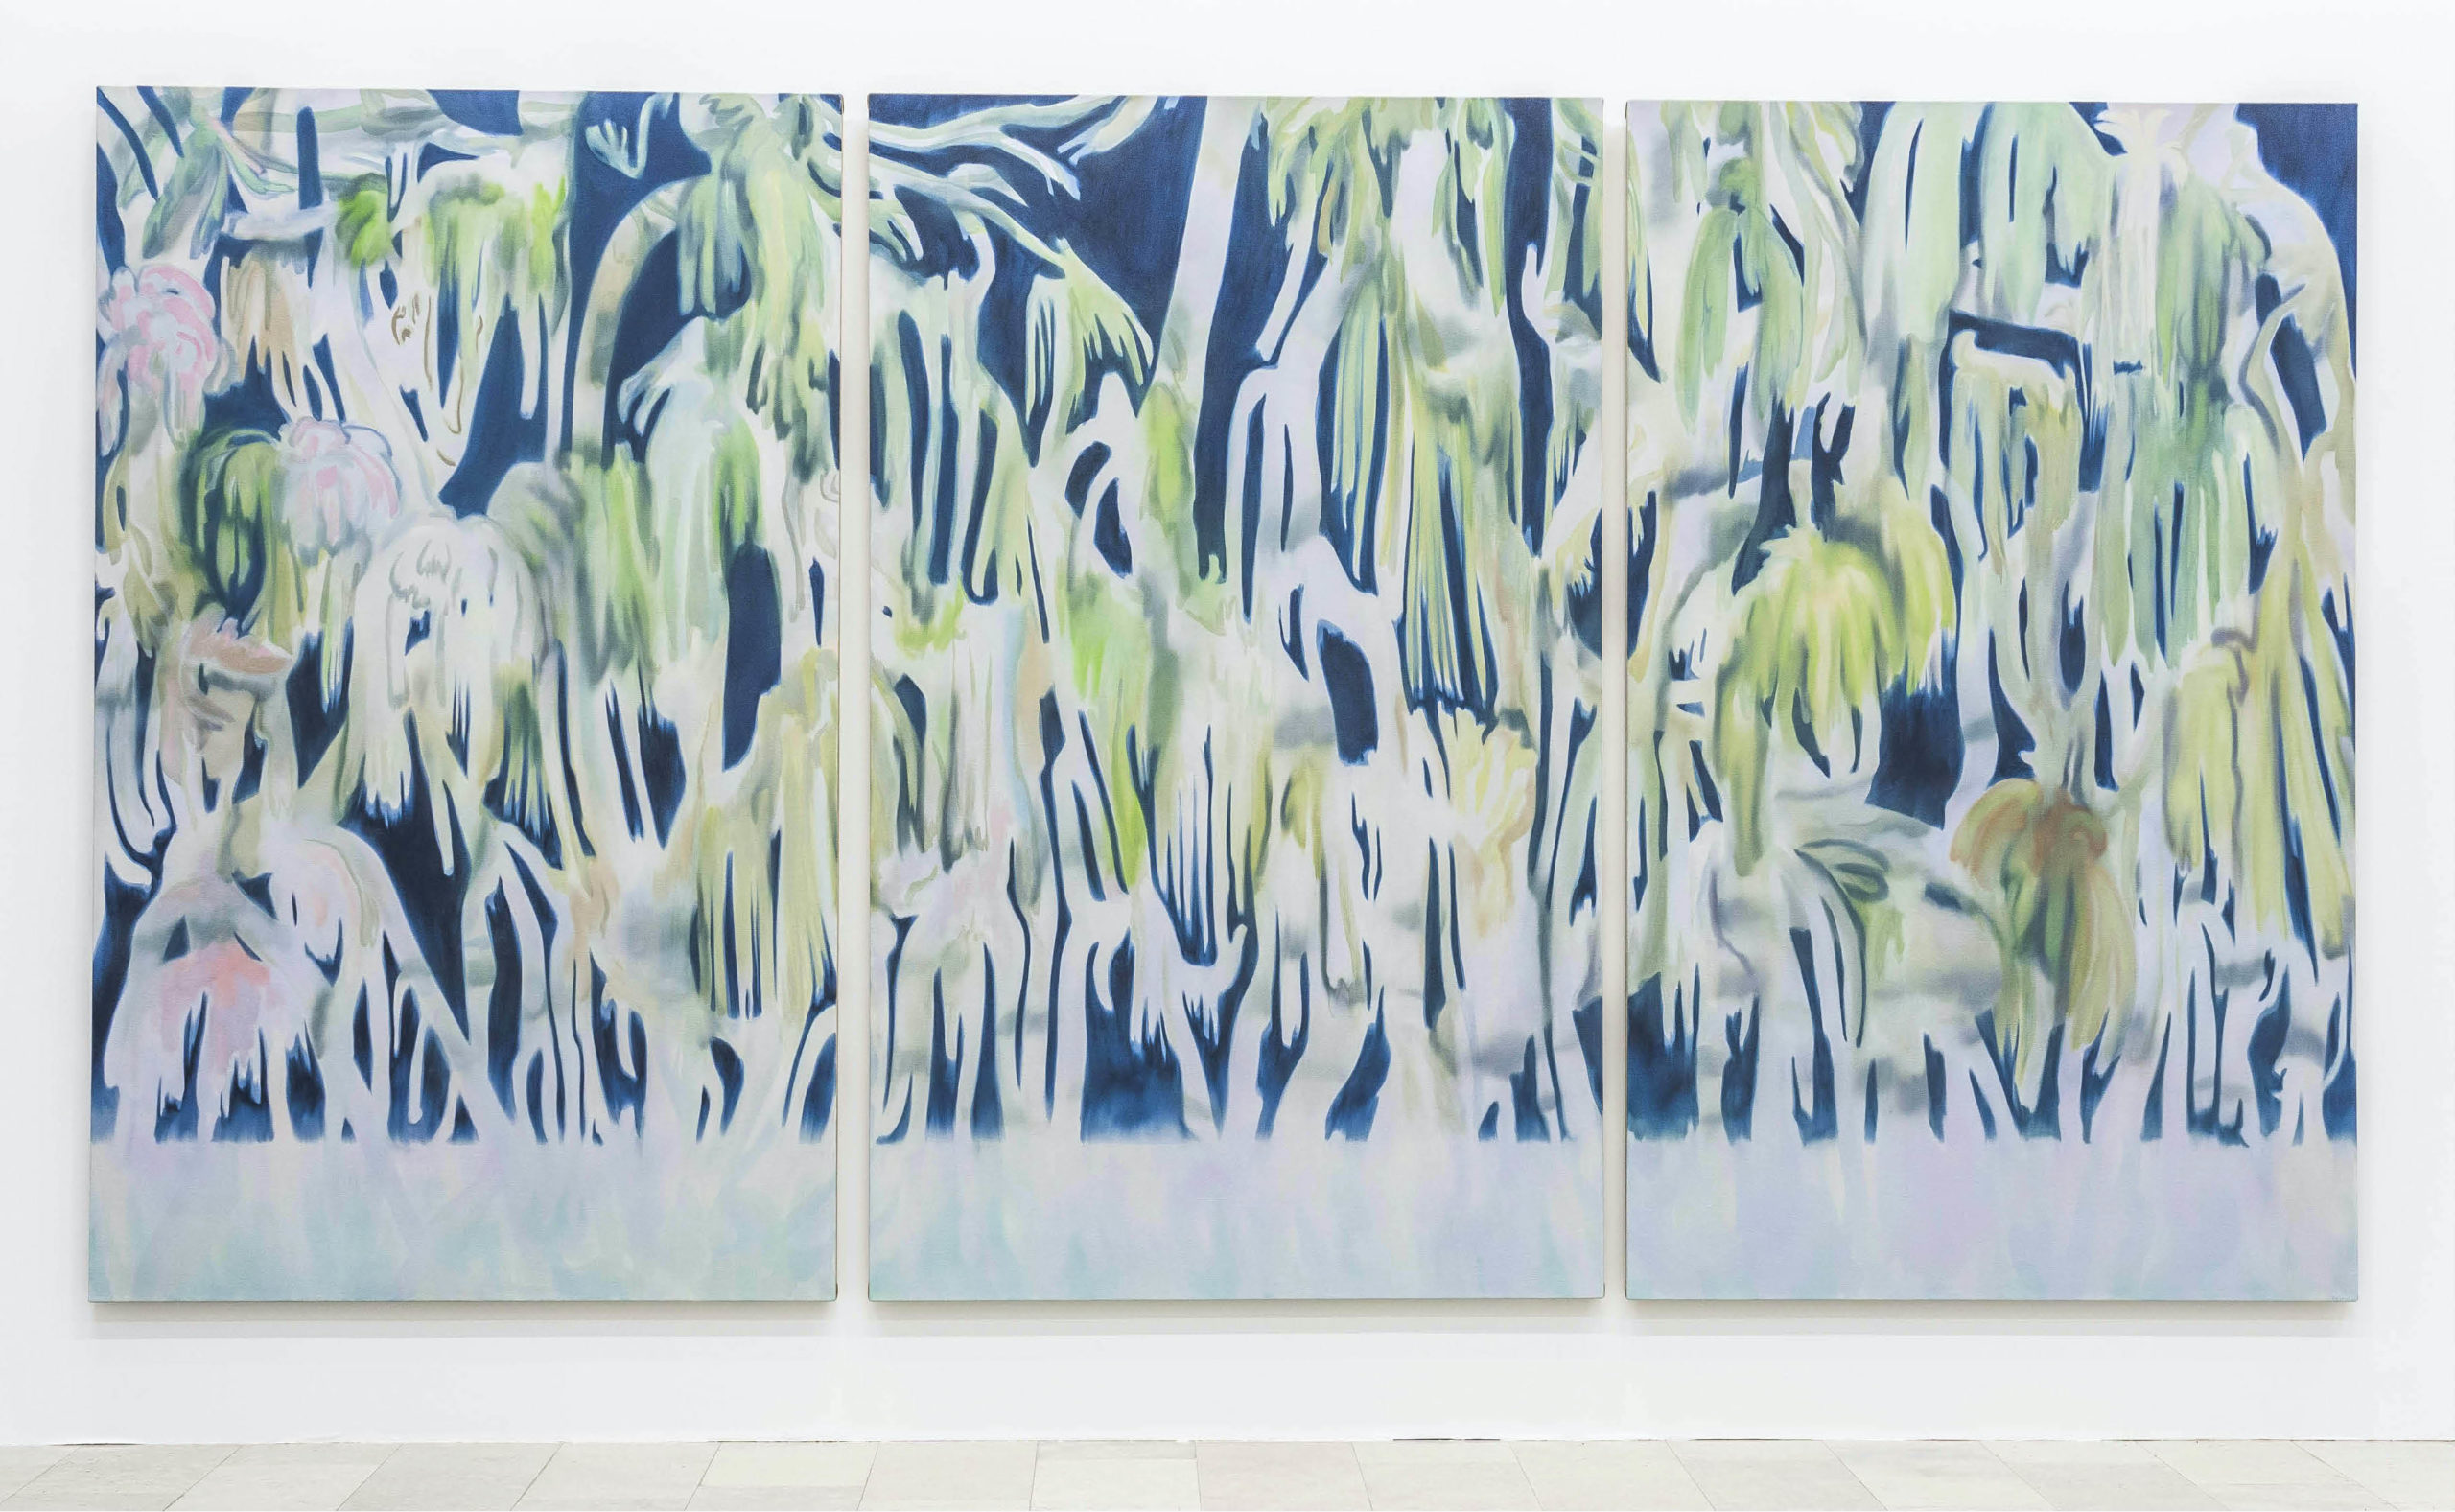 Martin Solymar, "Ghost Tree", oil on canvas, 230 x 420 cm (triptych)